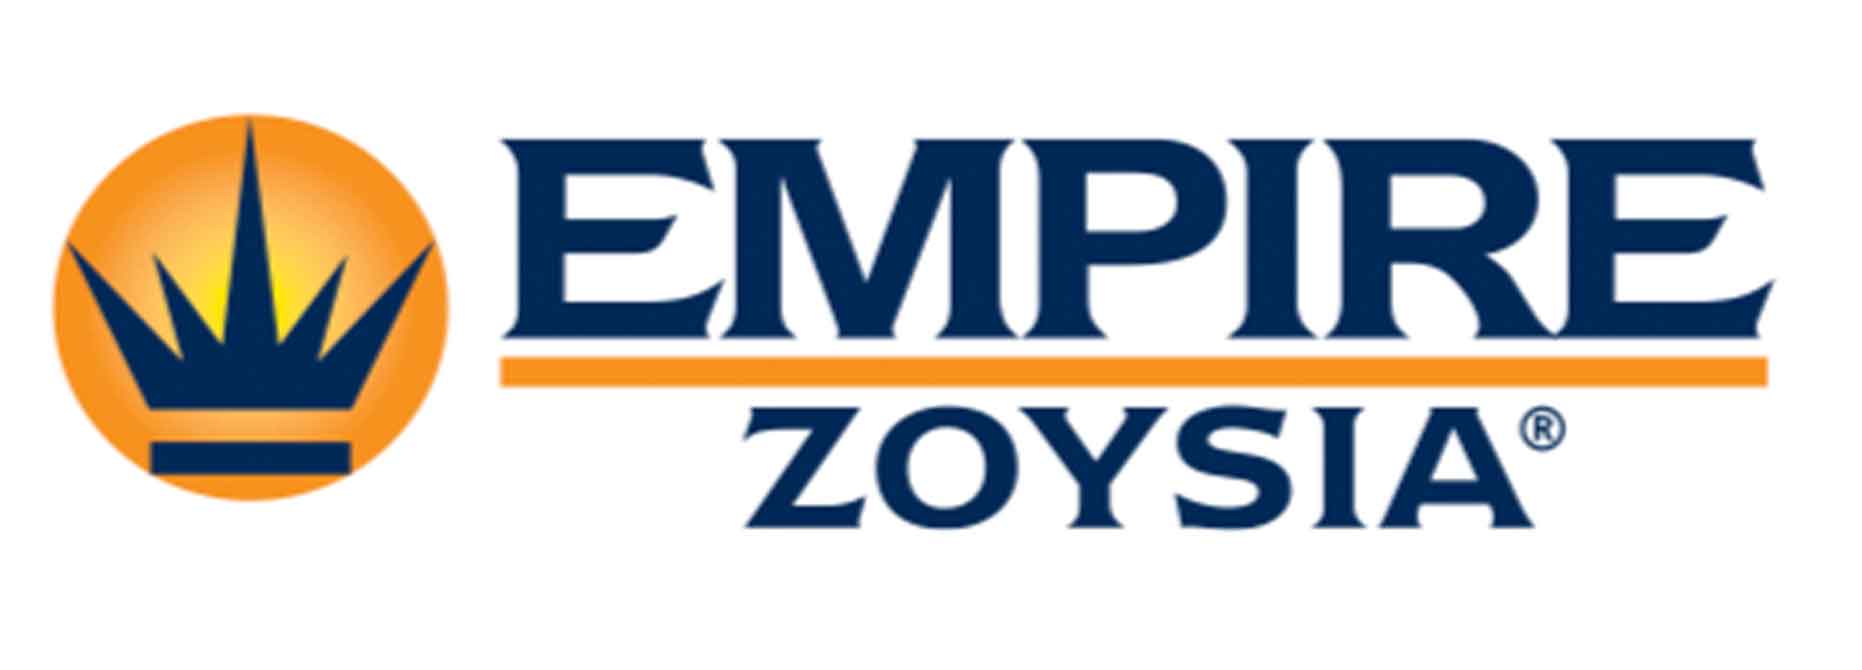 Empire-Zoysia Turf